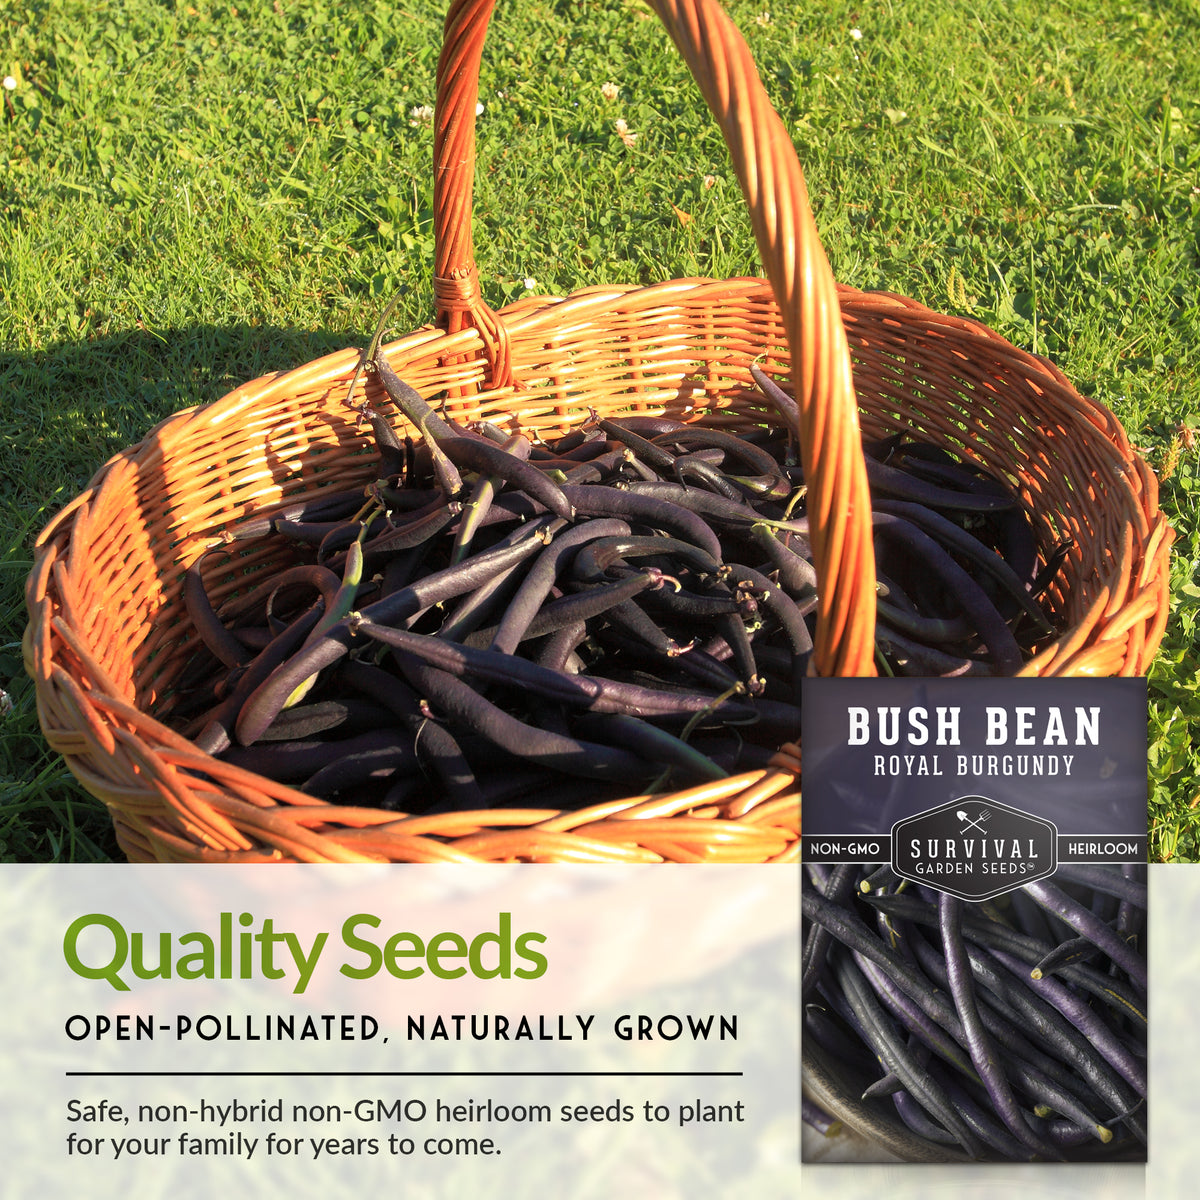 Royal Burgundy Bush Bean Seed